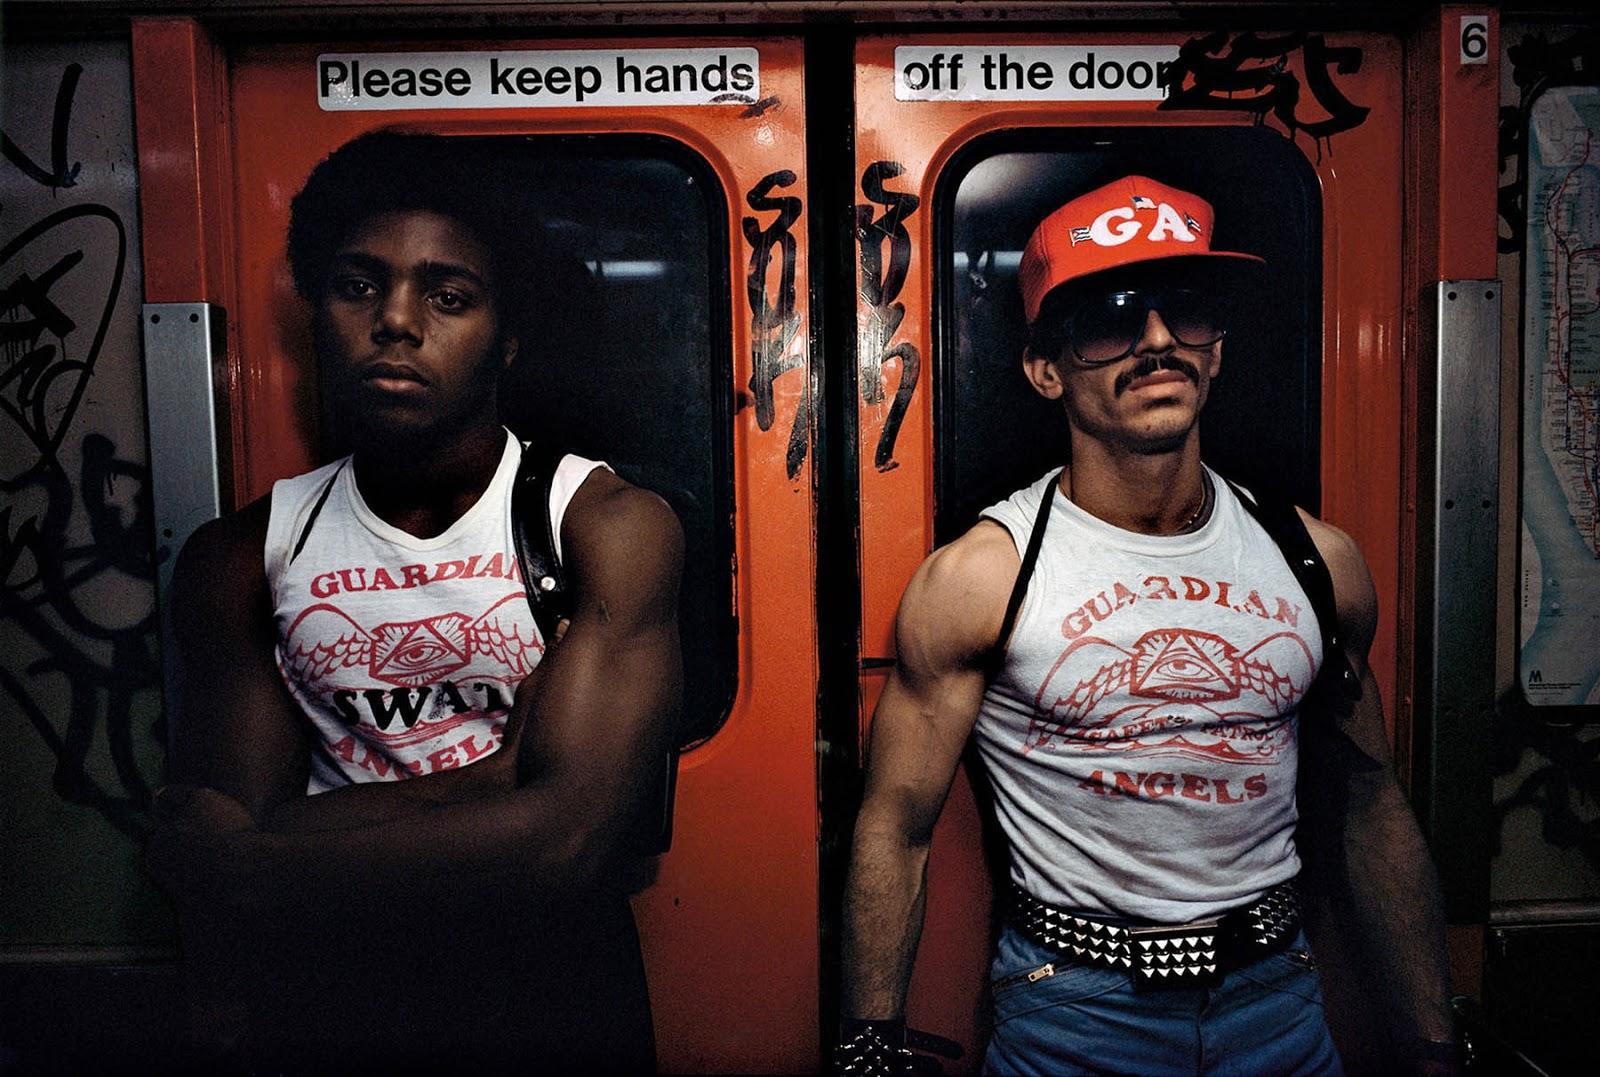 Les Anges gardiens sur le métro de new york, 1980